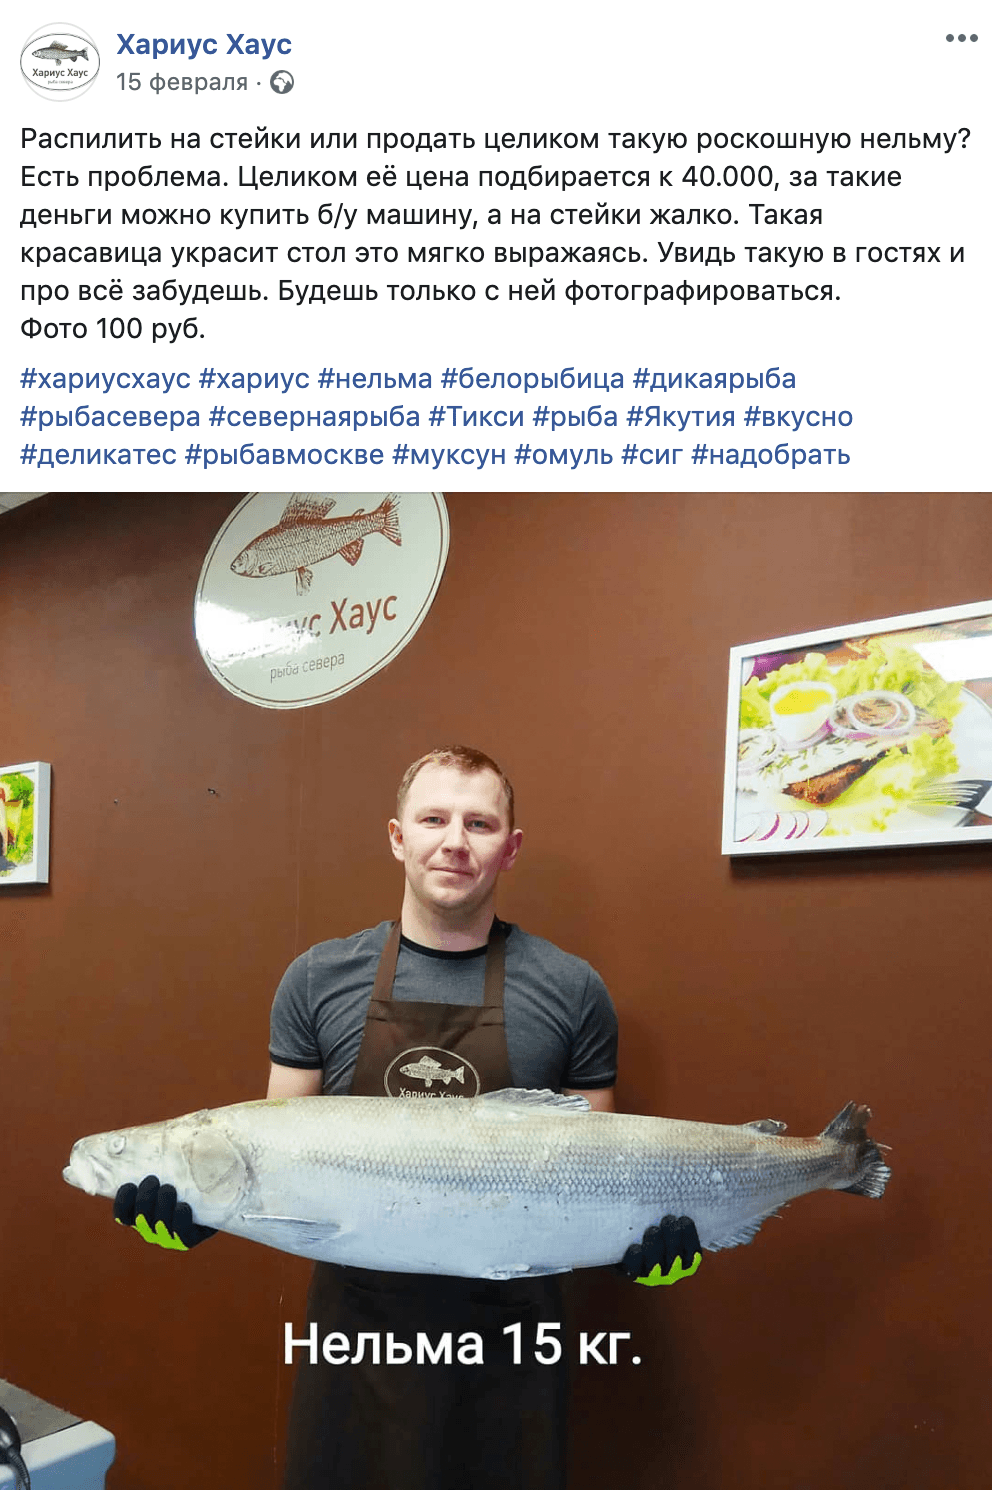 Сергей выложил в Фейсбуке пост о нельме стоимостью 40 тысяч рублей. Рыбу забронировали в тот&nbsp;же день прямо в комментариях к посту